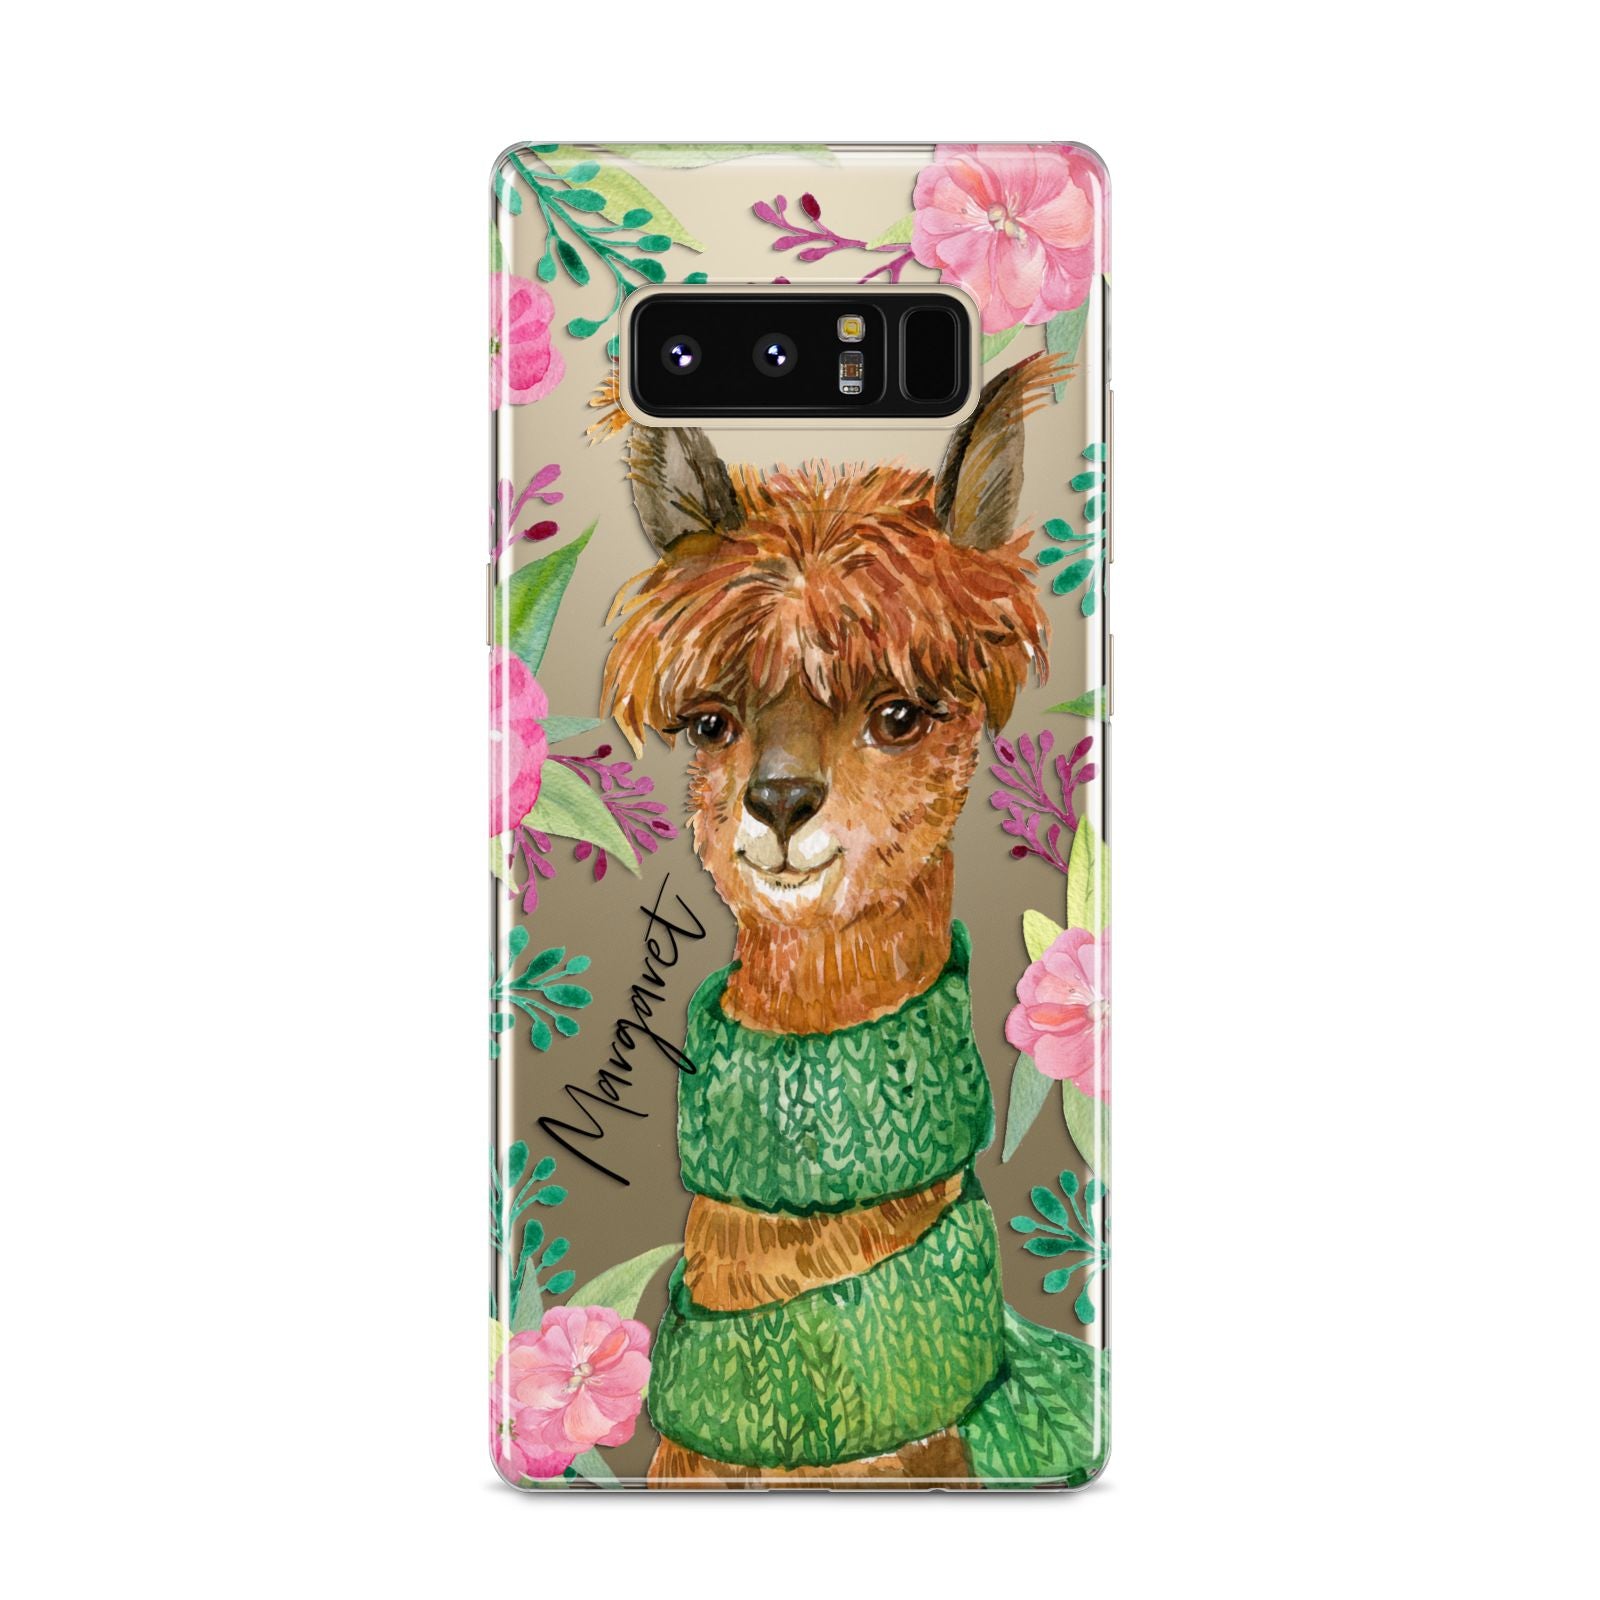 Personalised Alpaca Samsung Galaxy S8 Case